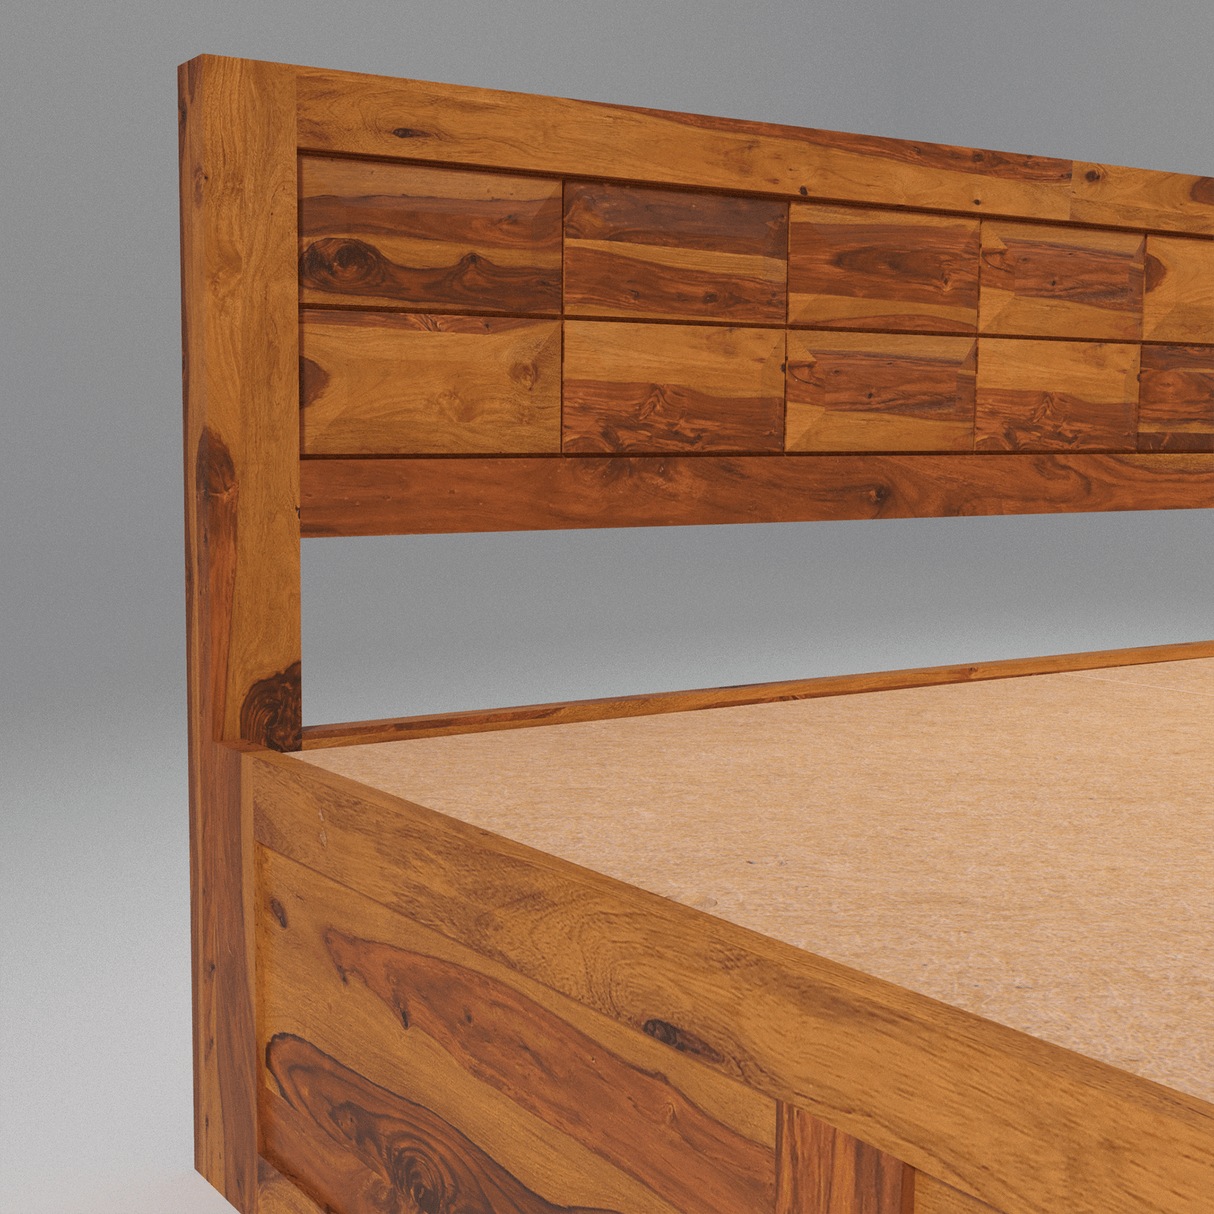 Arcadia Sheesham Wood Bed With Storage